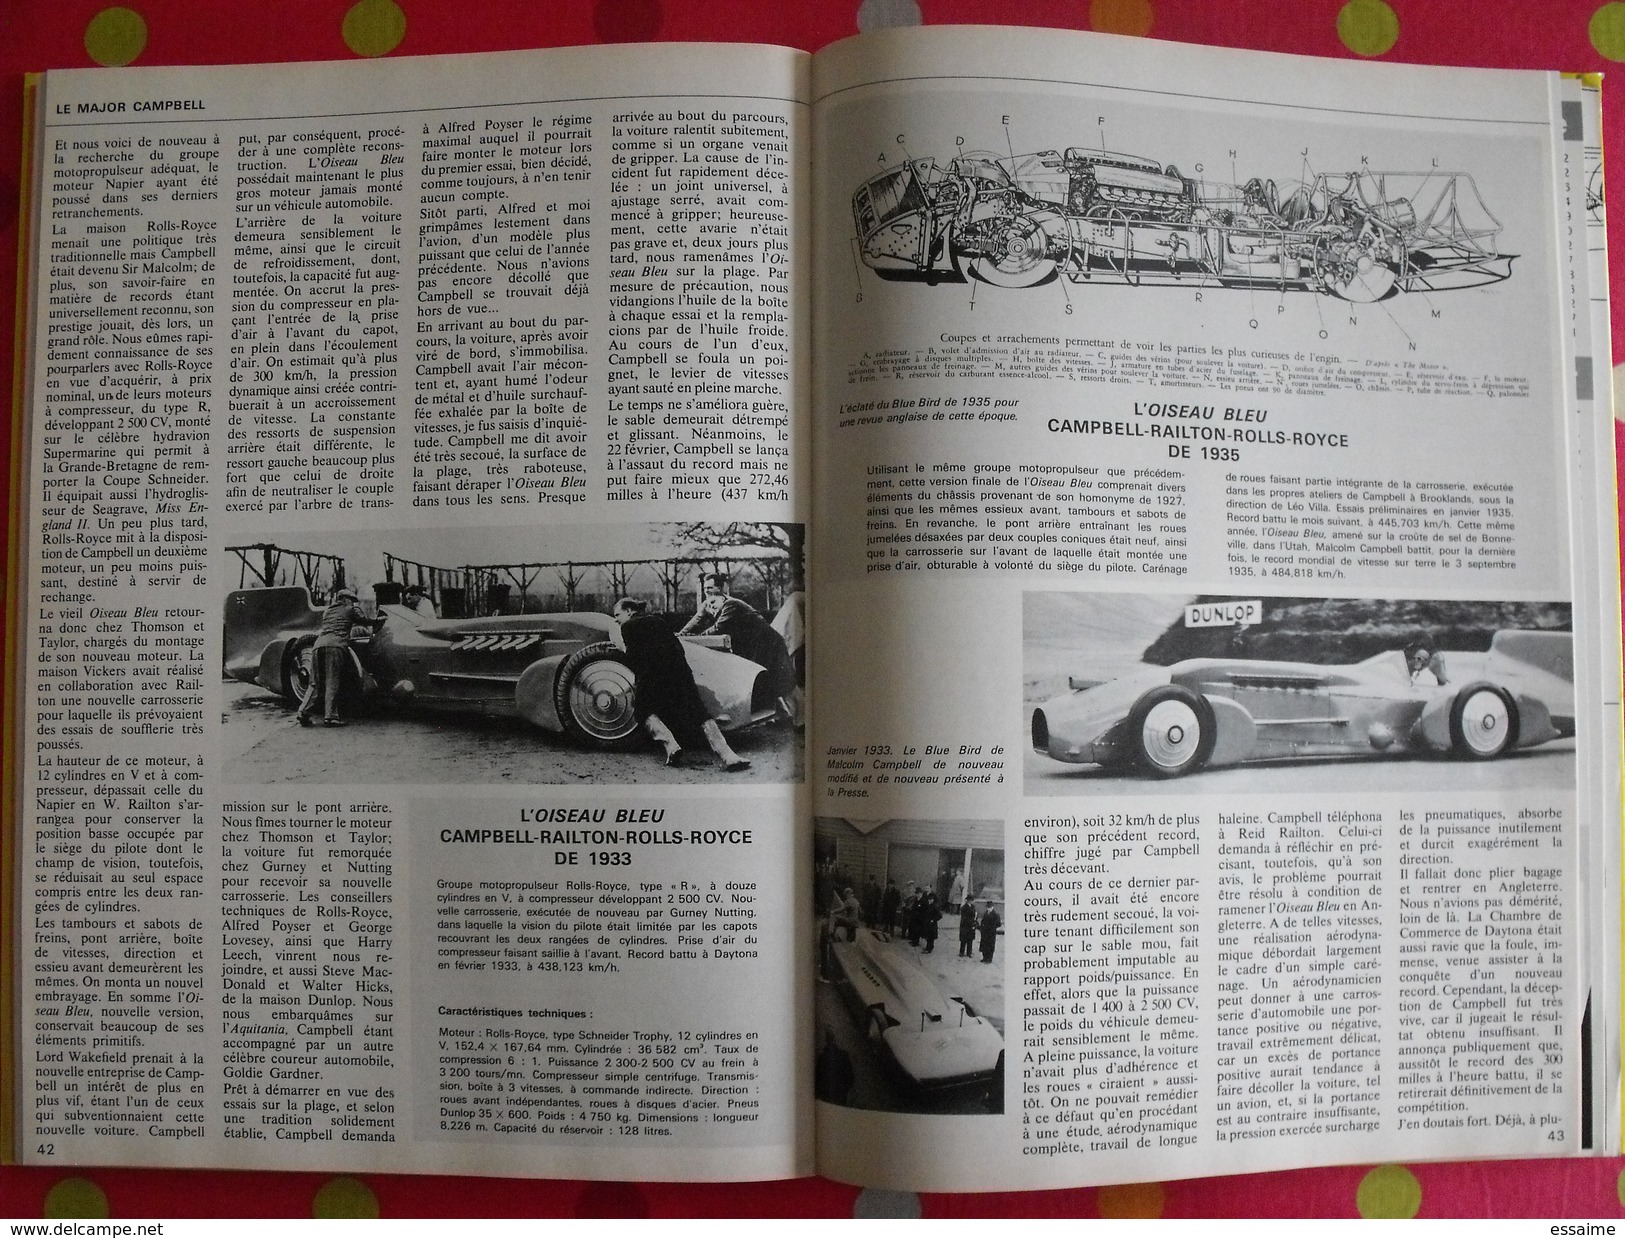 6 revues reliées l'enthousiaste. avion automobile train bateau. n° 1,2,8,11,12,14. 1977